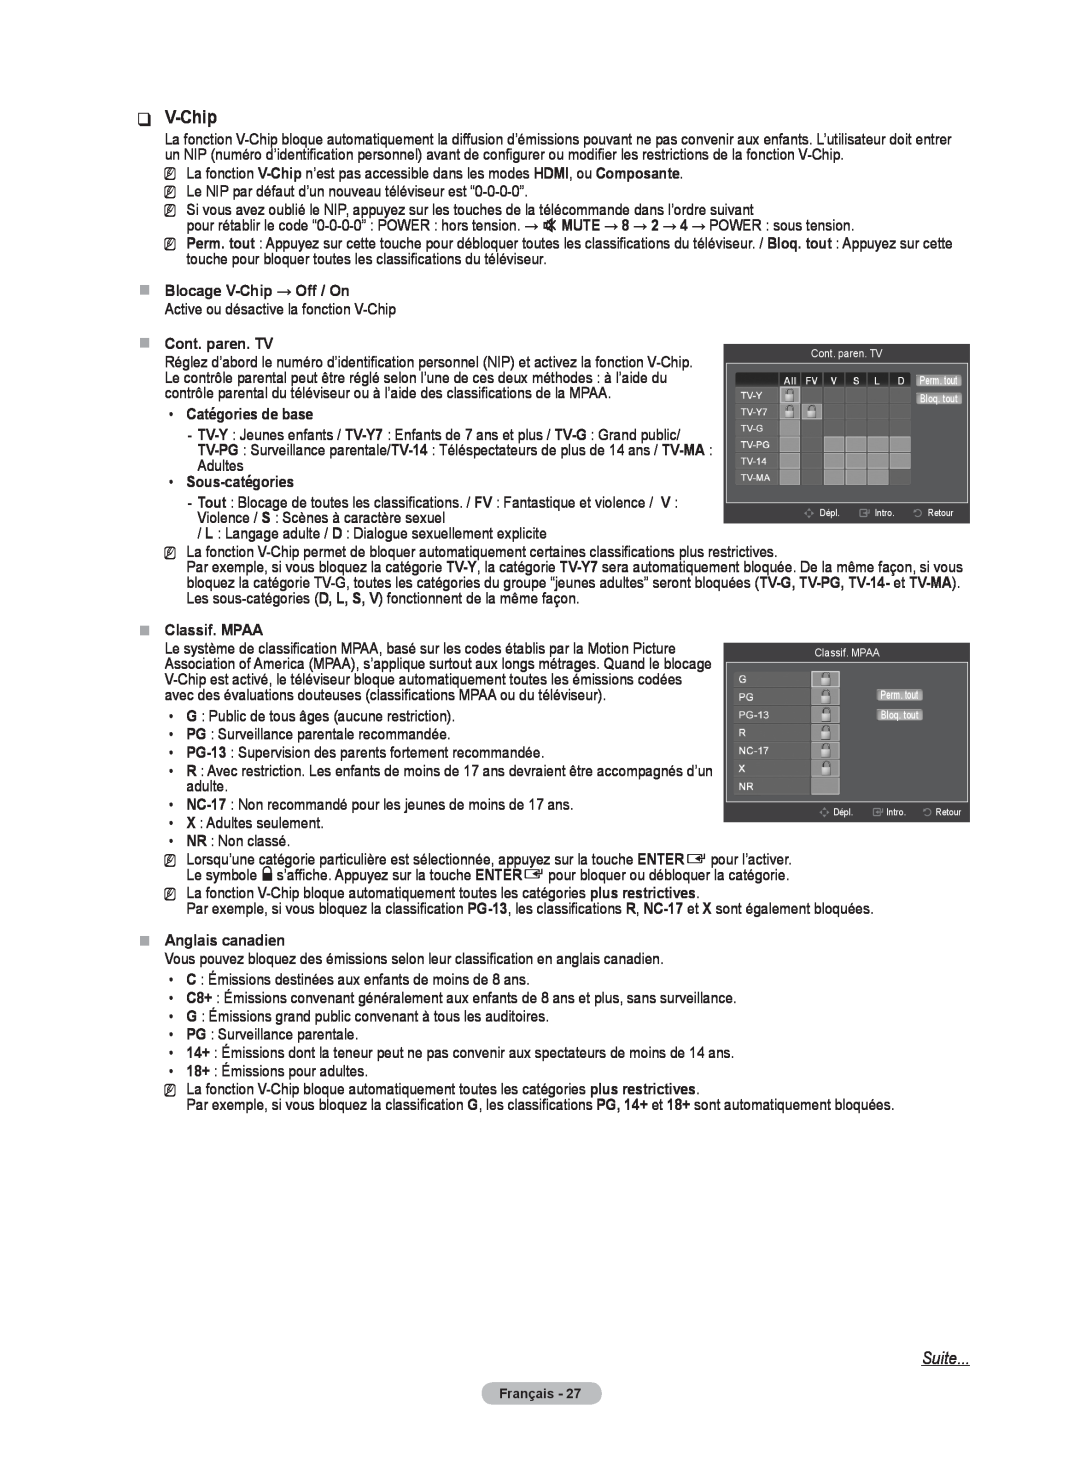 Samsung BN68-02426A-00 Suite, „„ Blocage V-Chip → Off / On, „ „ Cont. paren. TV, Catégories de base, Sous-catégories 